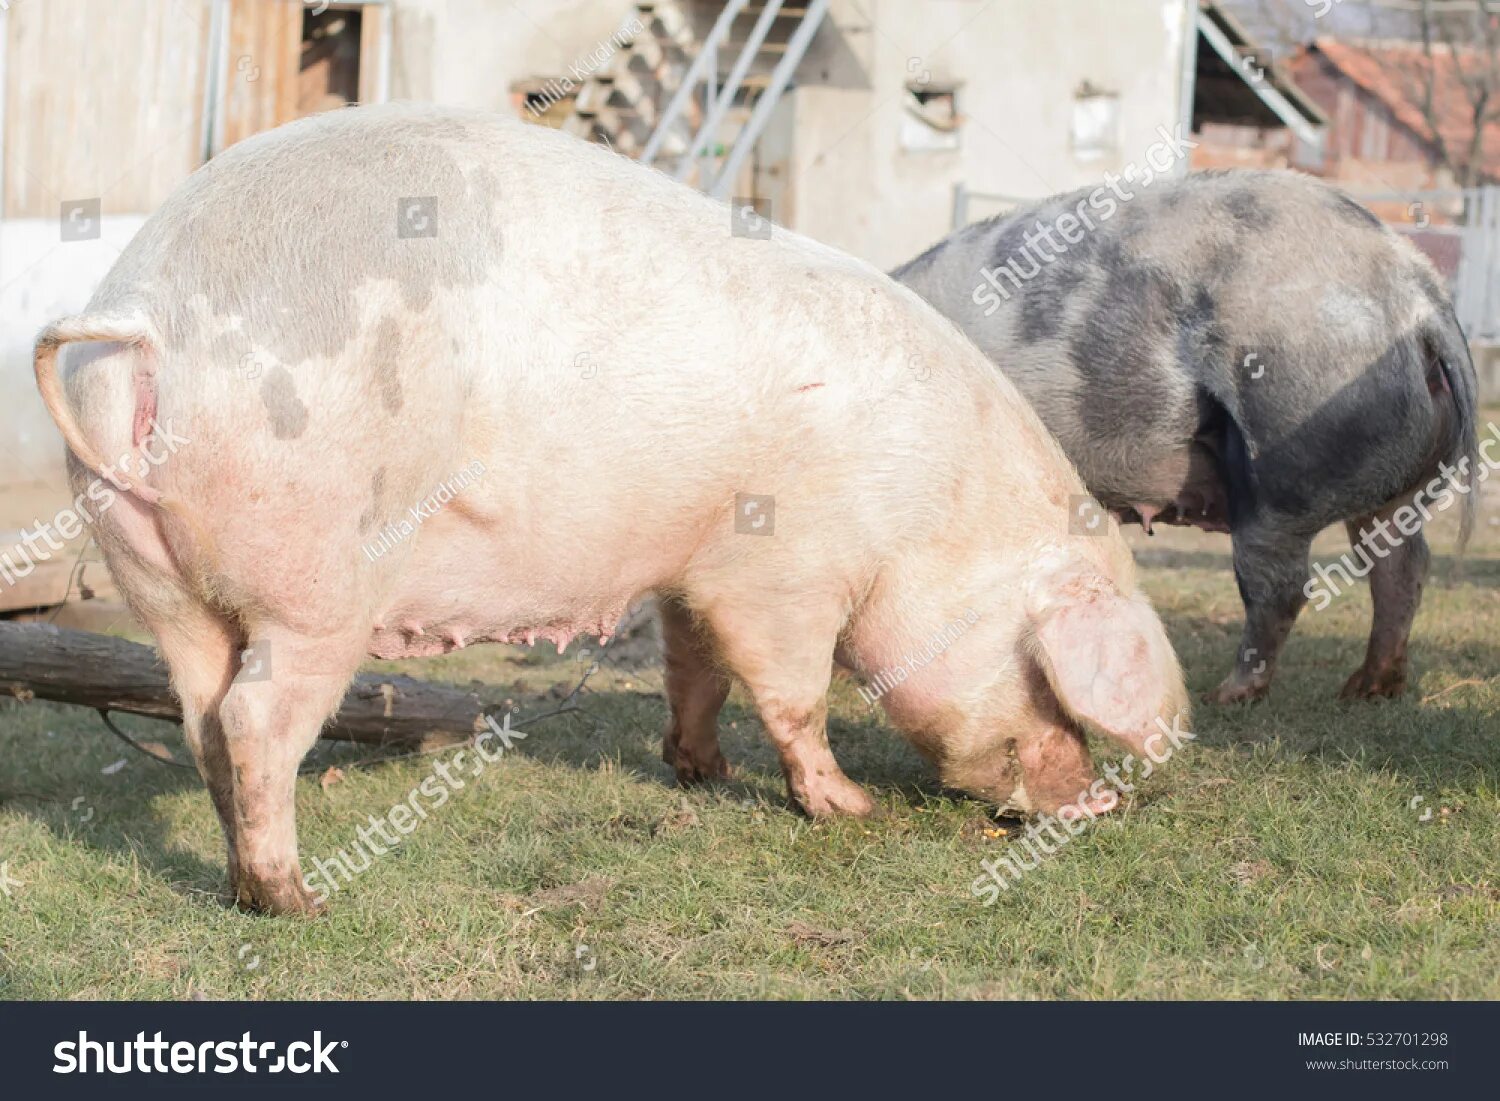 Ливенская свинья. Уржумская порода свиней. Ливенская порода свиней. Уржумская порода поросят. Муромская порода свиней.